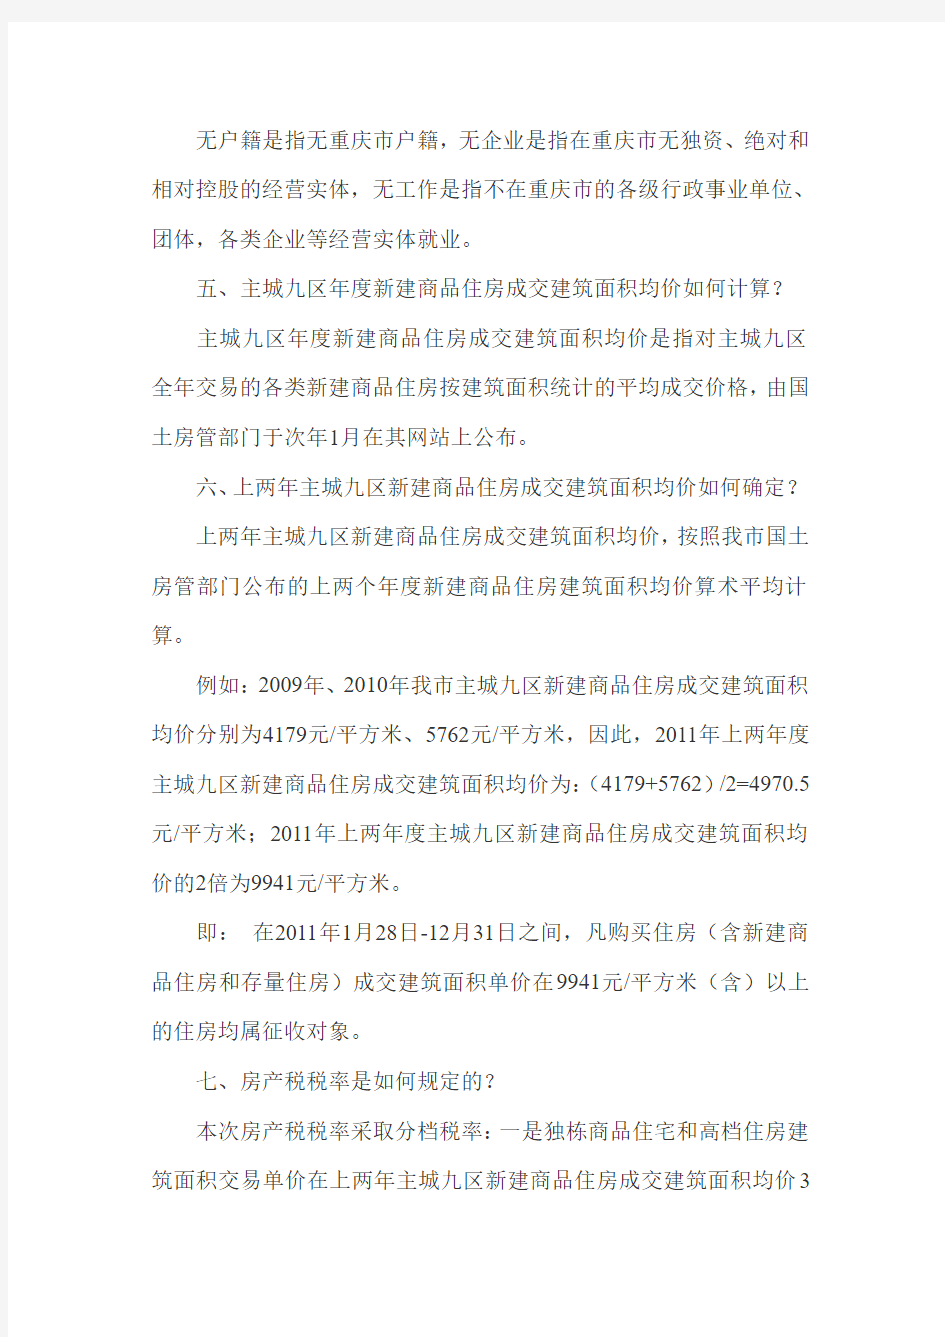 重庆市征收个人住房房产税相关政策解读